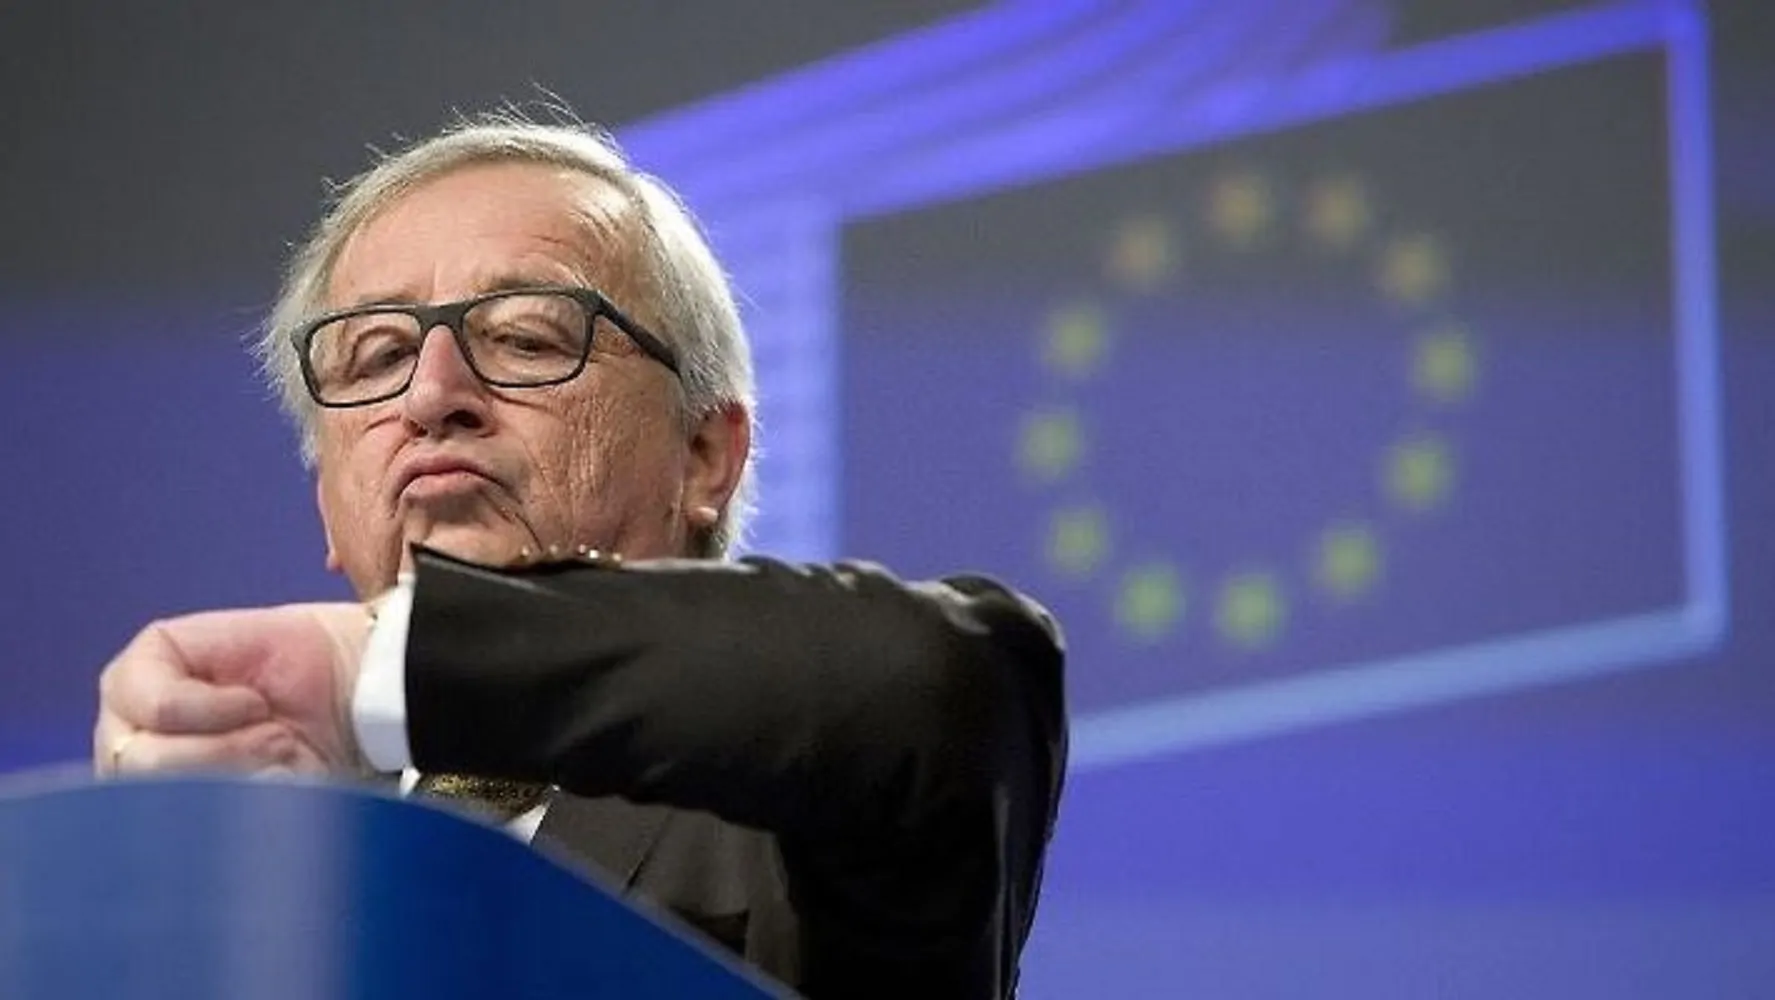 Ue contro l'ora legale, Juncker: "Basta cambio in Europa"